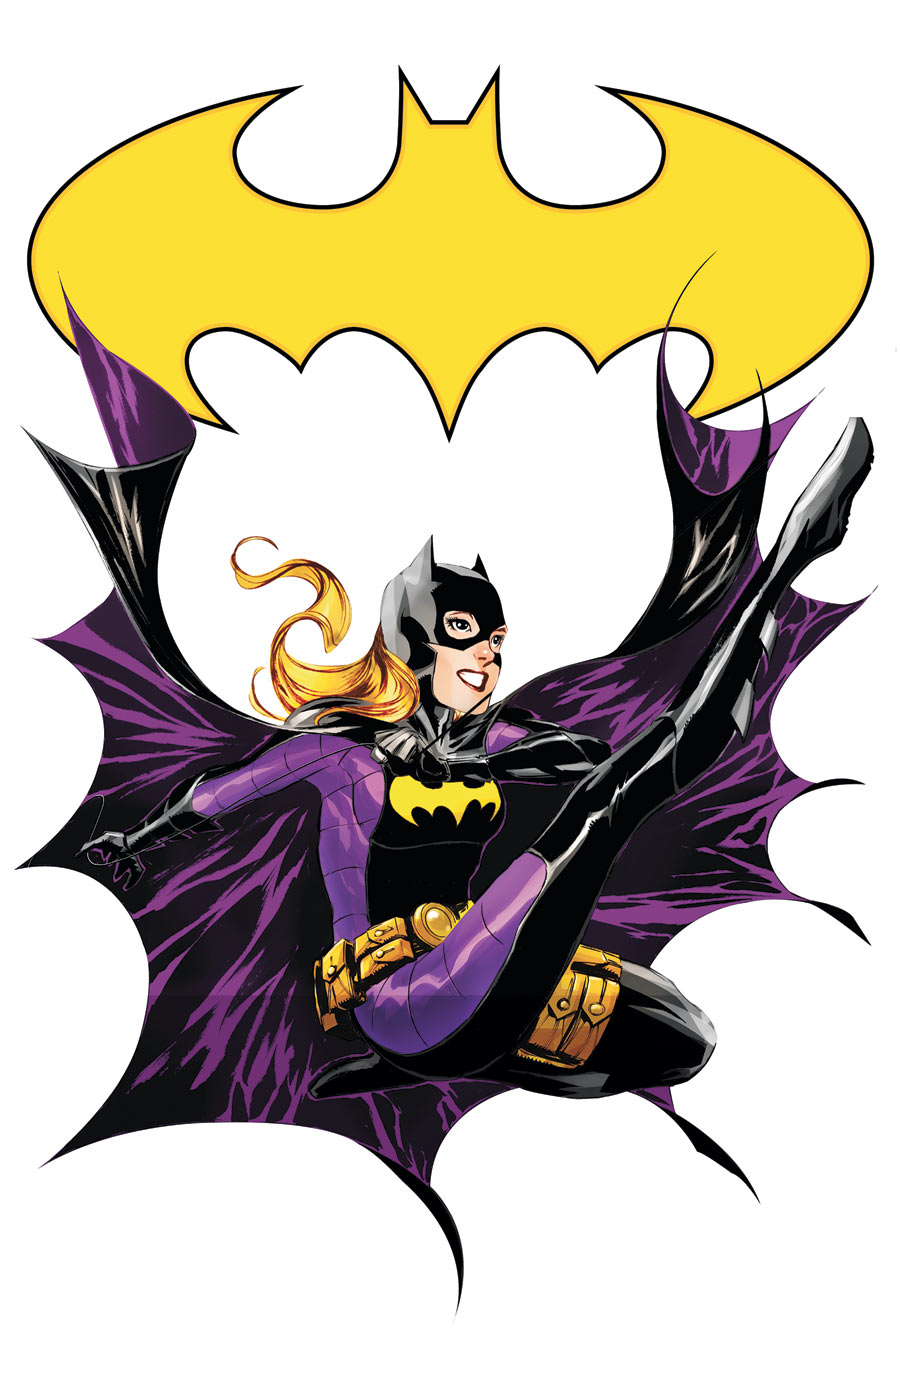 Batgirl 17